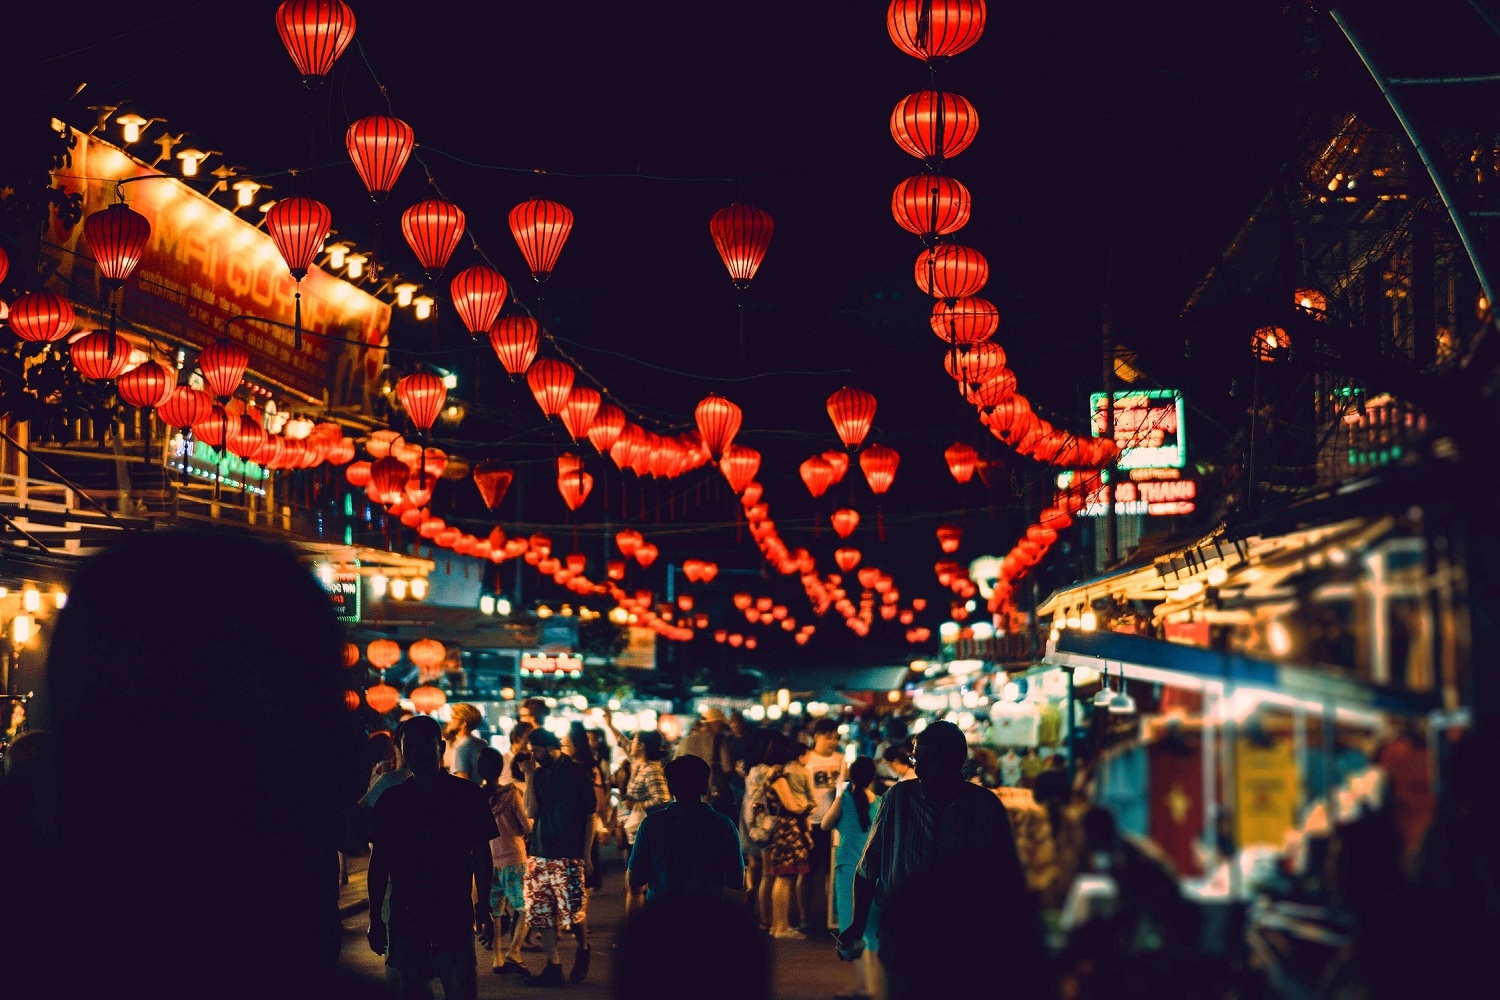 Chợ đêm Phú Quốc (chợ đêm Bạch Đằng) – Thế giới ẩm thực nhộn nhịp khi đêm về